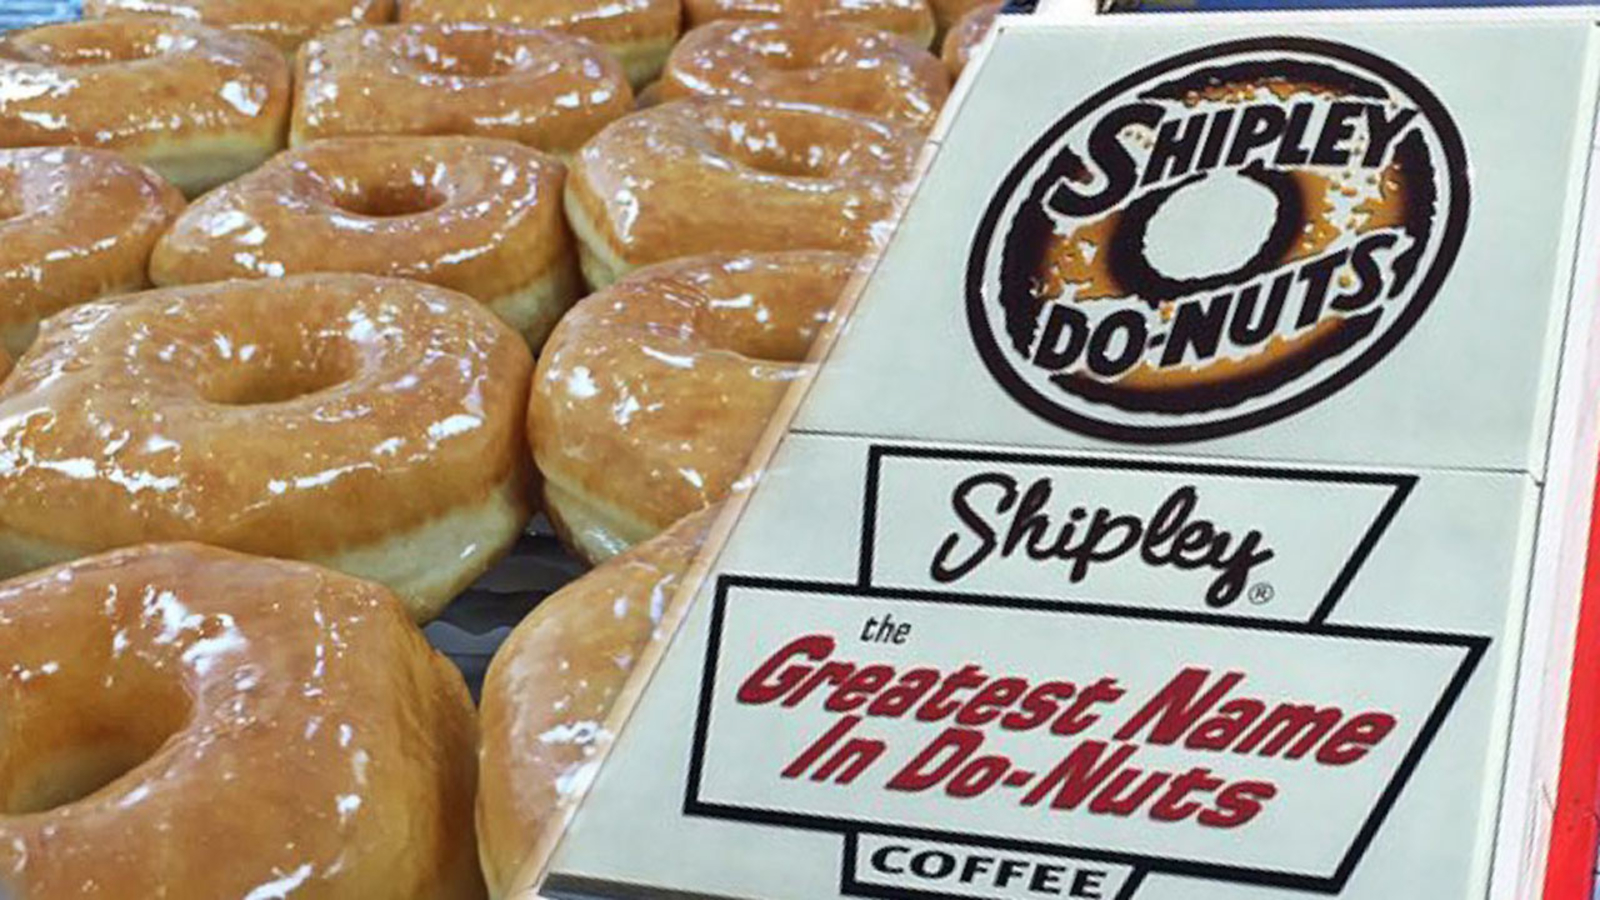 Shipley Donuts in Atlanta